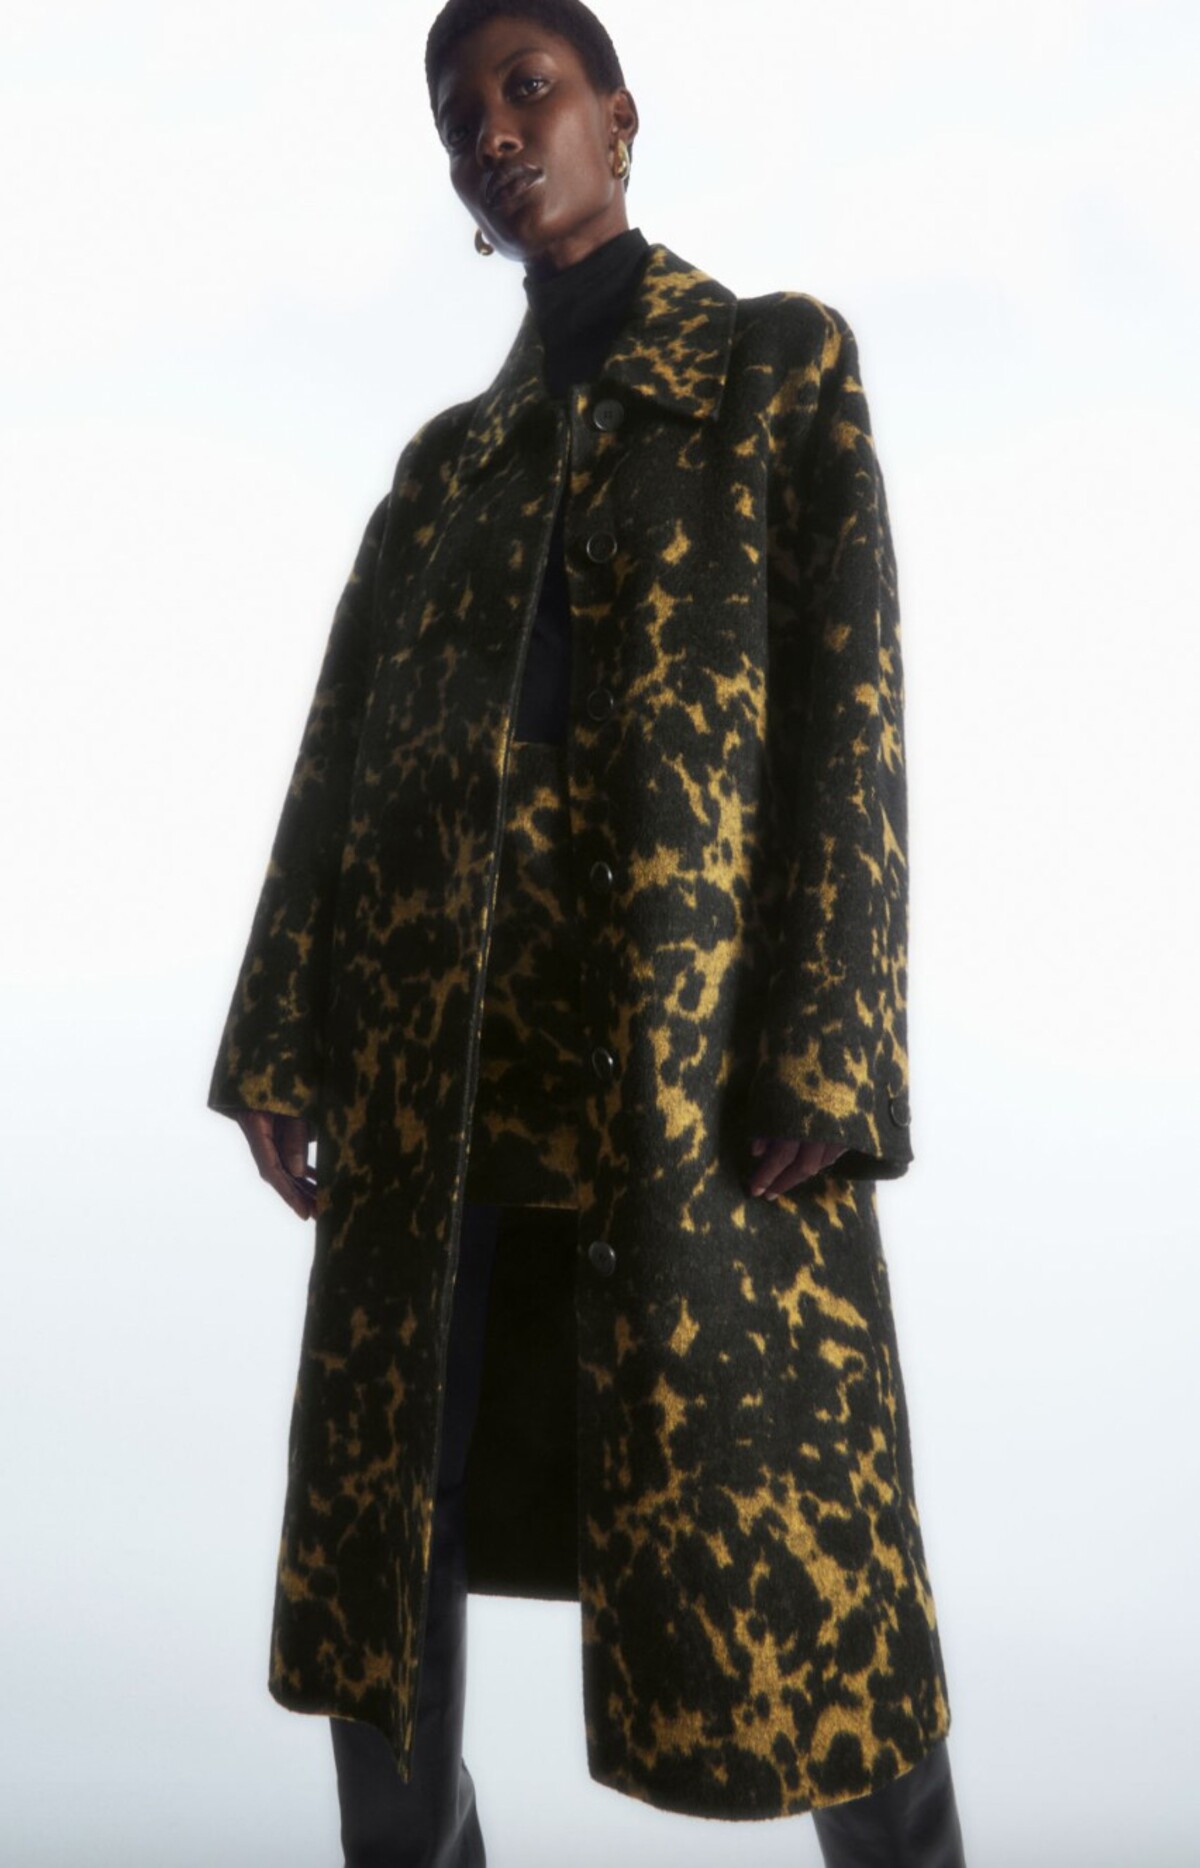 Vlnený kabát s extravagantným printom ponúka unikátne farebné vyhotovenie aj oversize strih. Model na fotke od značky COS kúpiš za 290 eur.